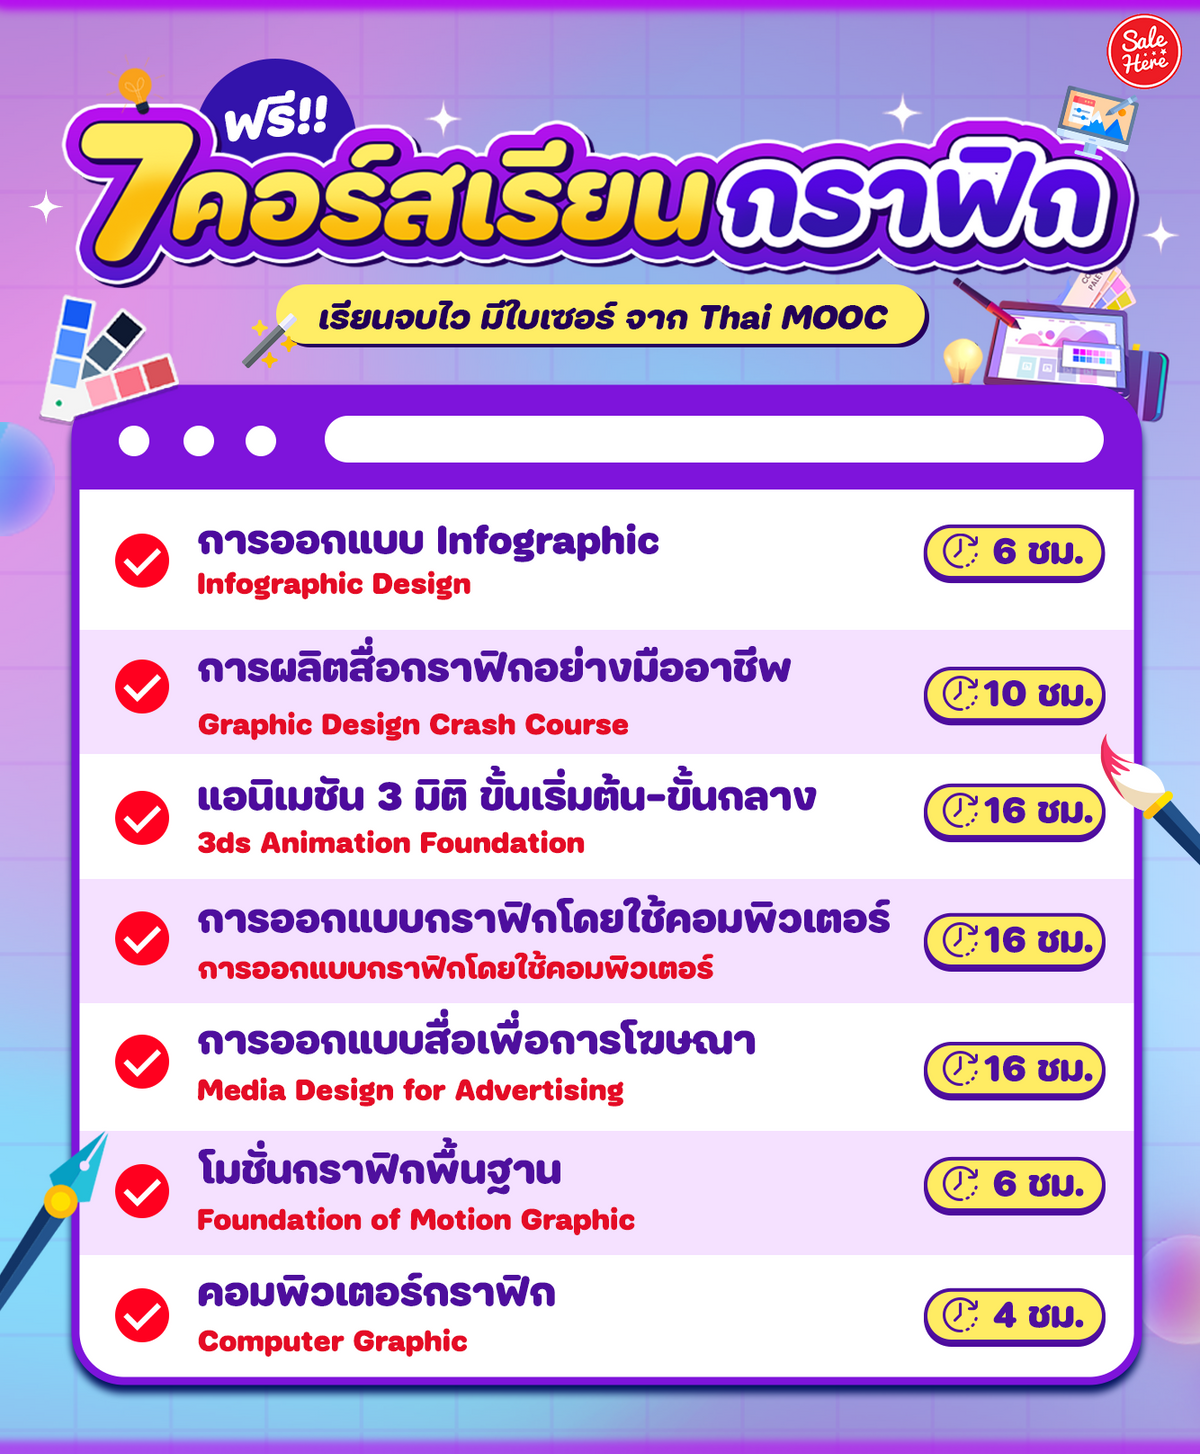 7 คอร์สเรียนกราฟิกฟรี!! เรียนจบไว มีใบเซอร์ จาก Thai Mooc - Sale Here